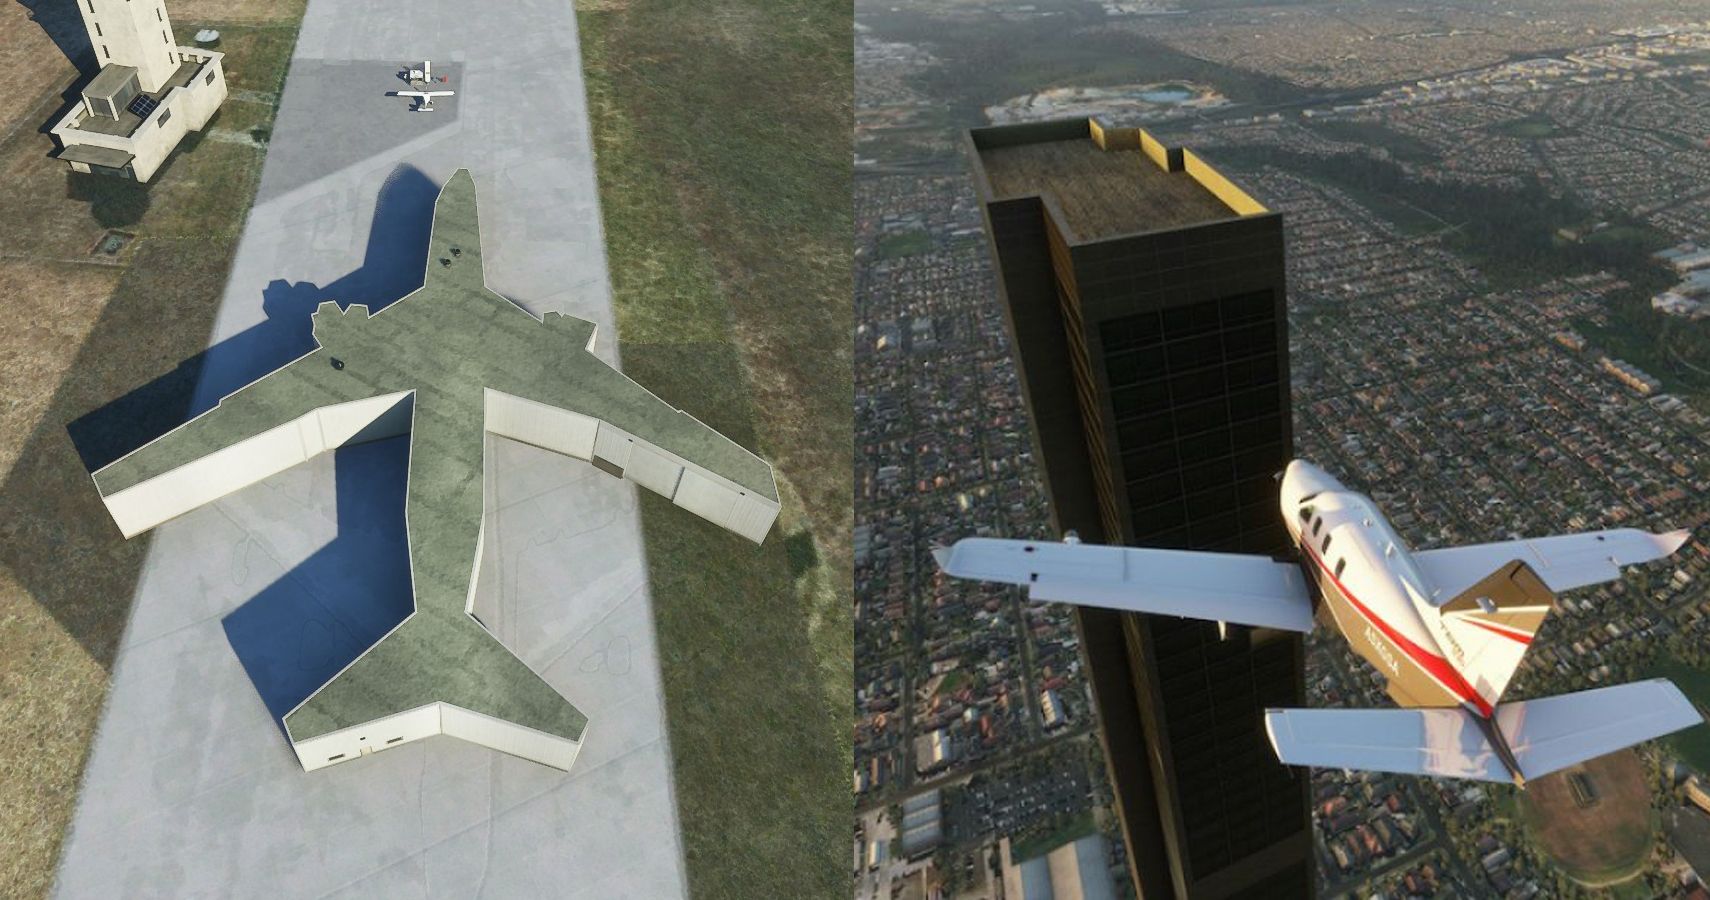 Beautiful Locations In Microsoft Flight Simulator 2020